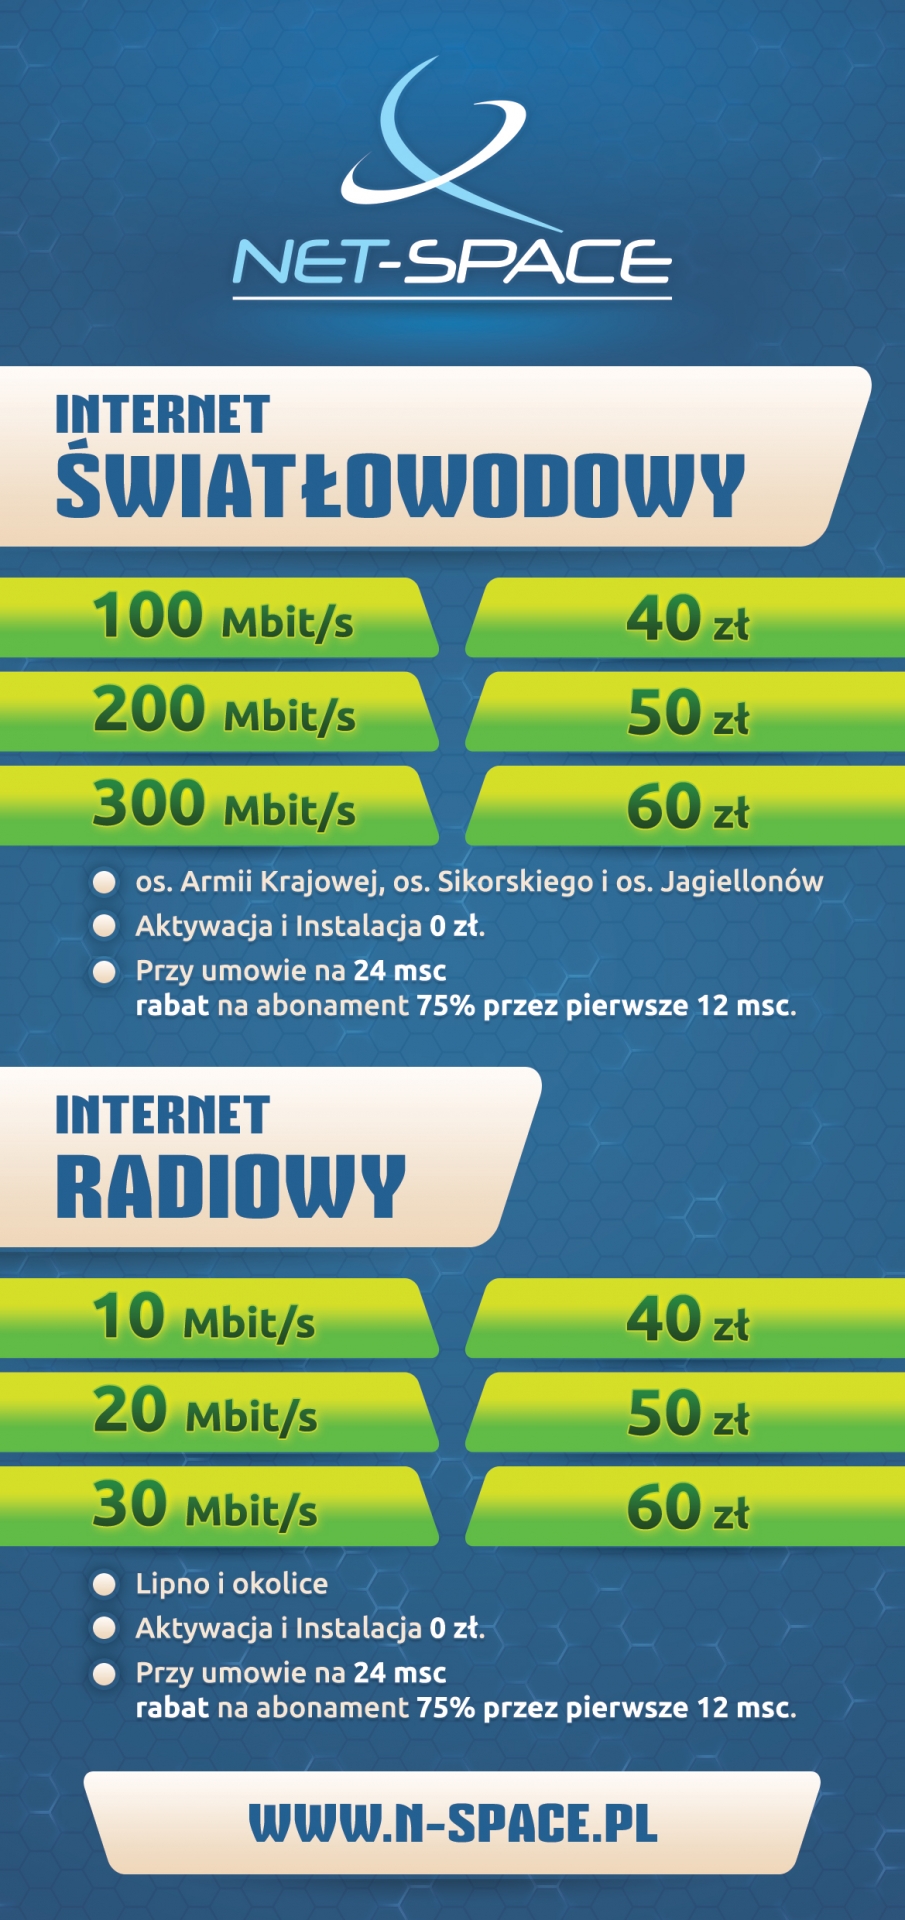 NET-Space. Tył ulotki DL 99x210mm dla dostawcy Internetu. Cennik ISP. Zaduszniki. Wielgie. n-space.pl